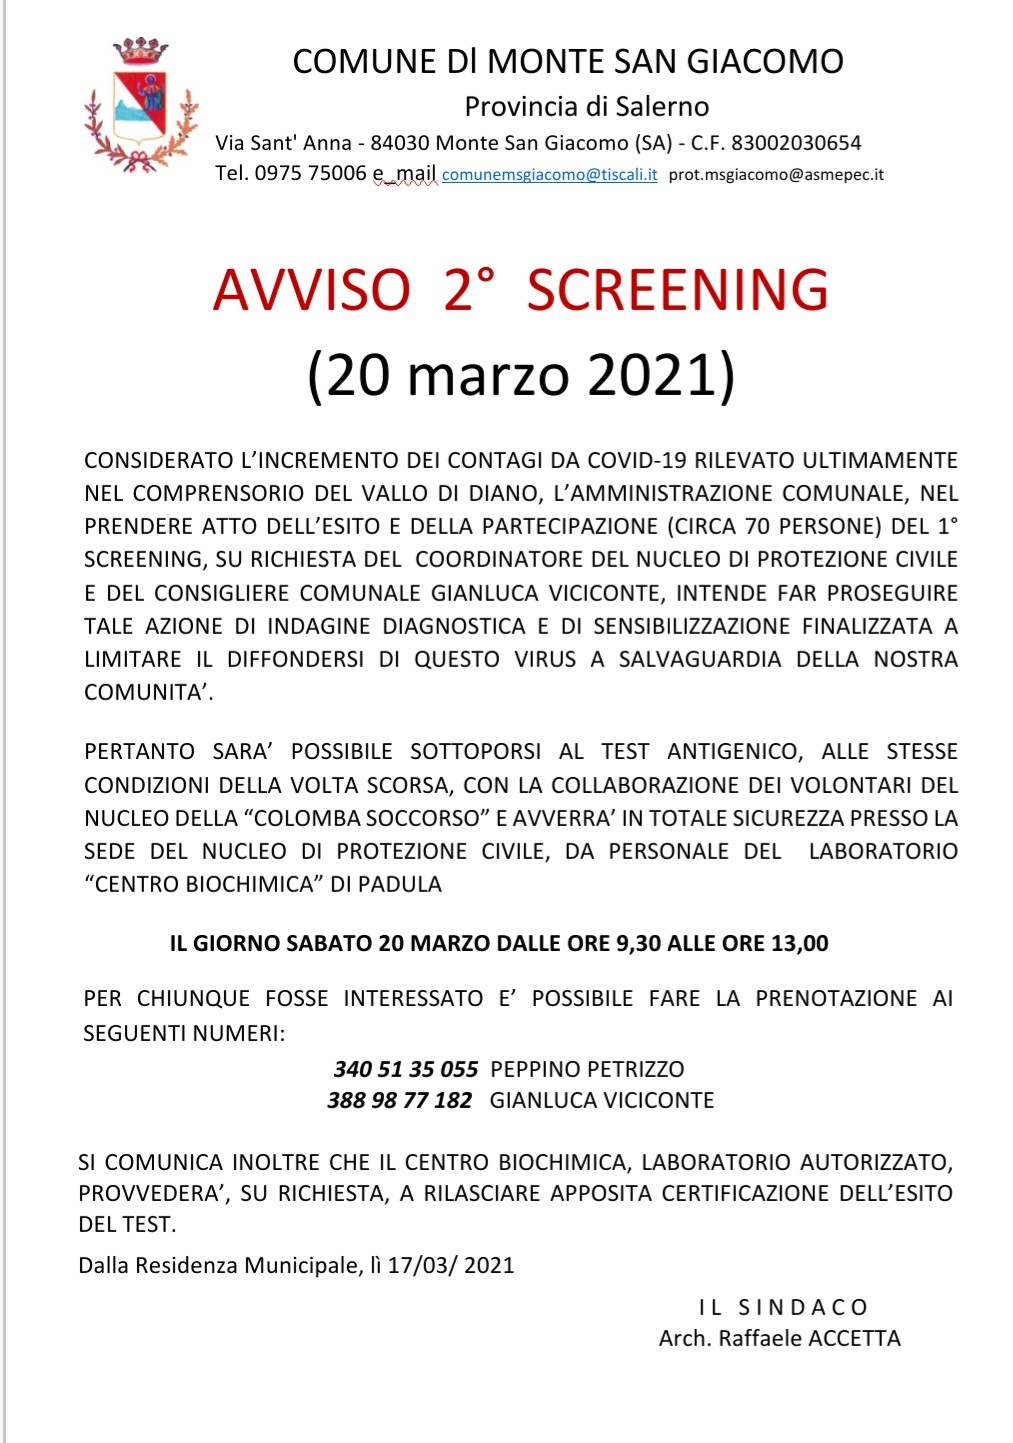 Avviso 2° Screening